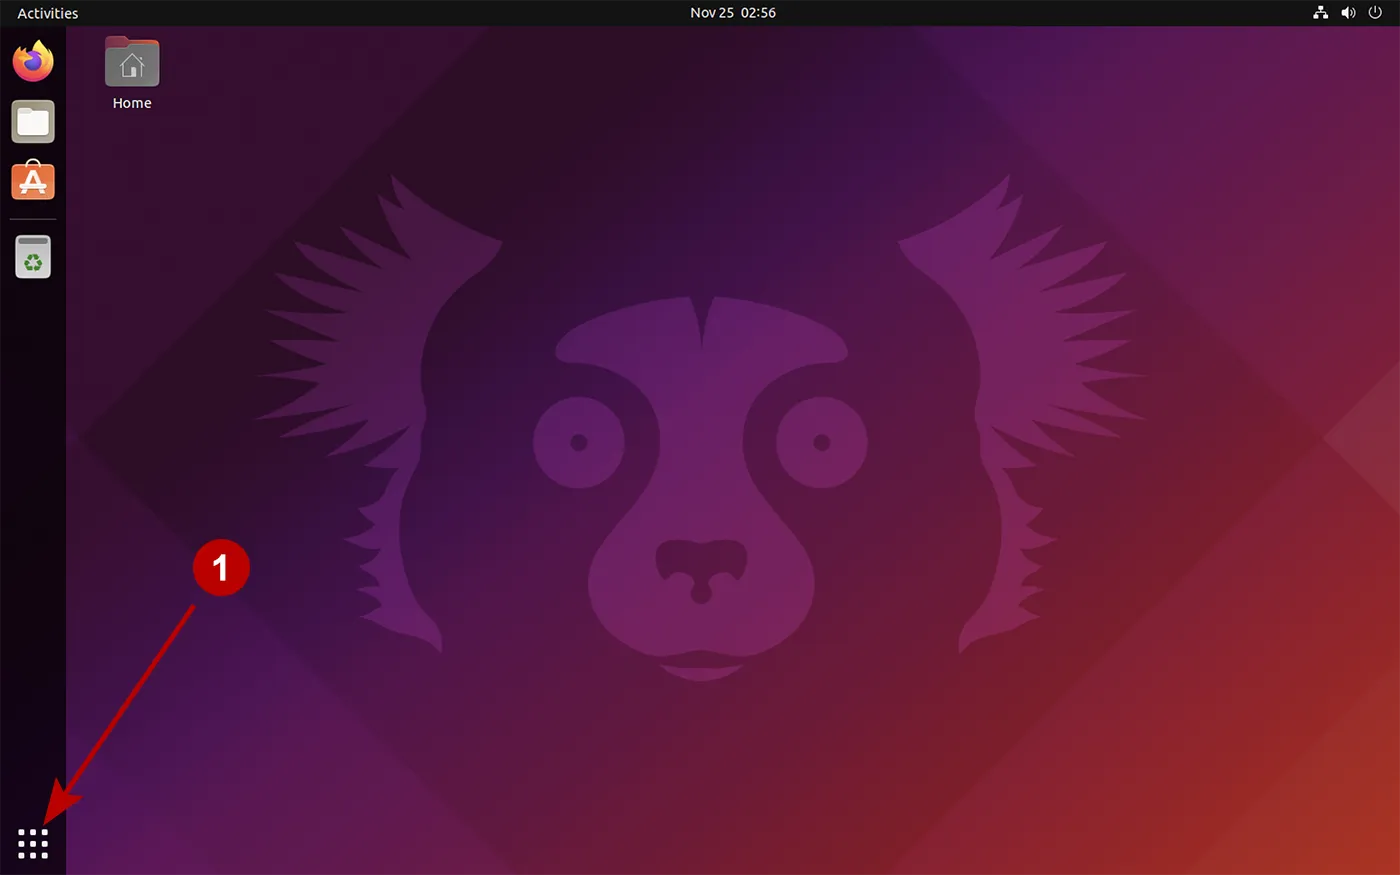 All programs on Ubuntu 21